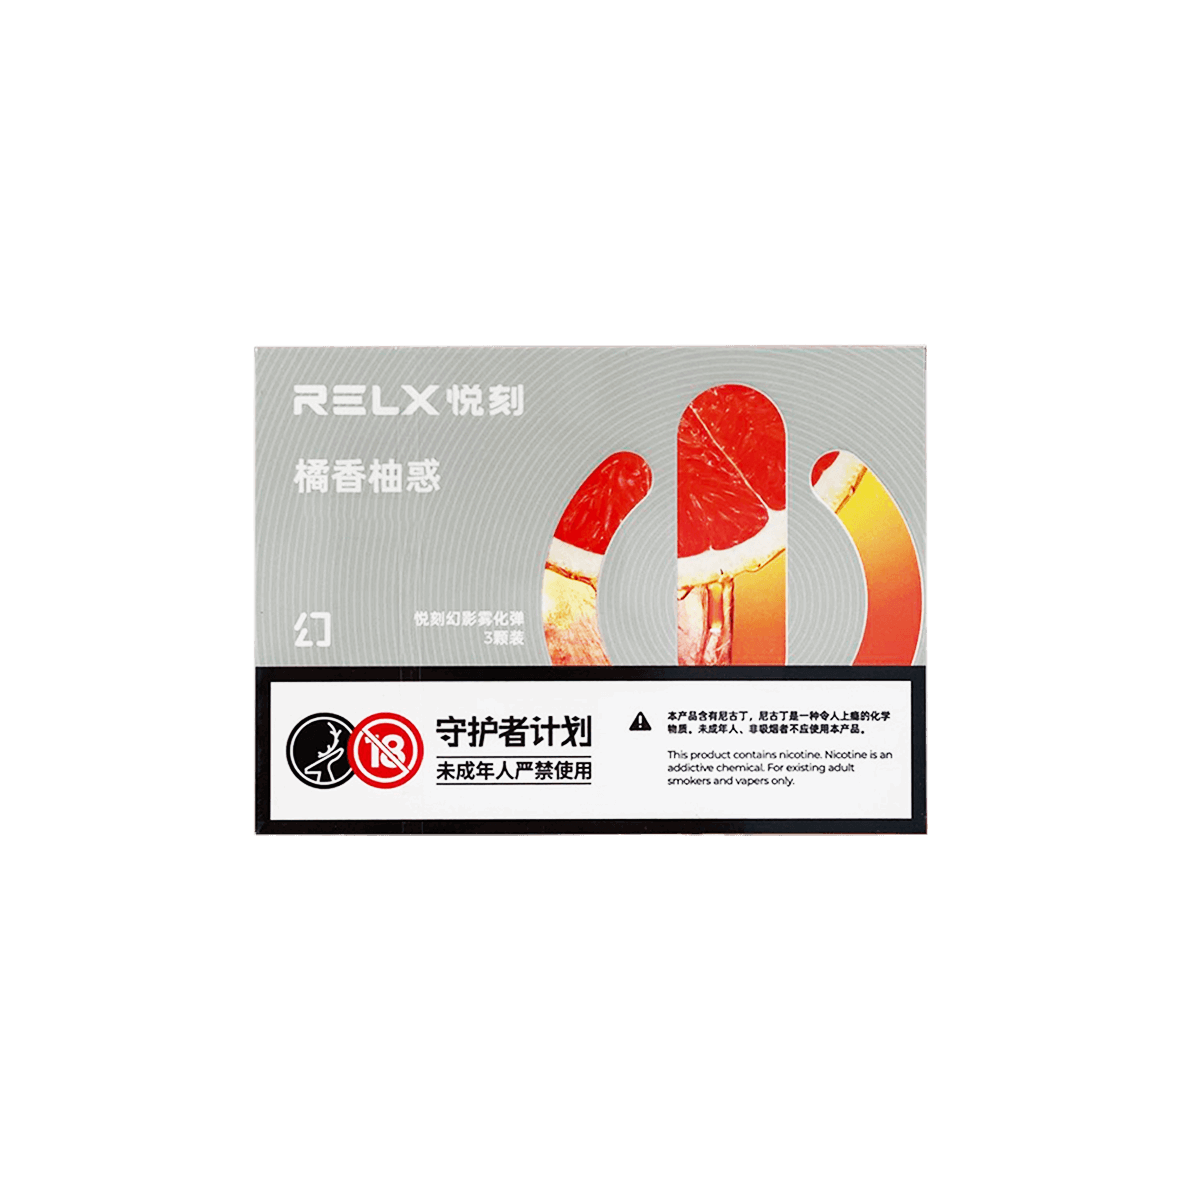 RELX VAPE：Online Shop for Vape Pens ＆ E-Cigarettes丨RELX UK